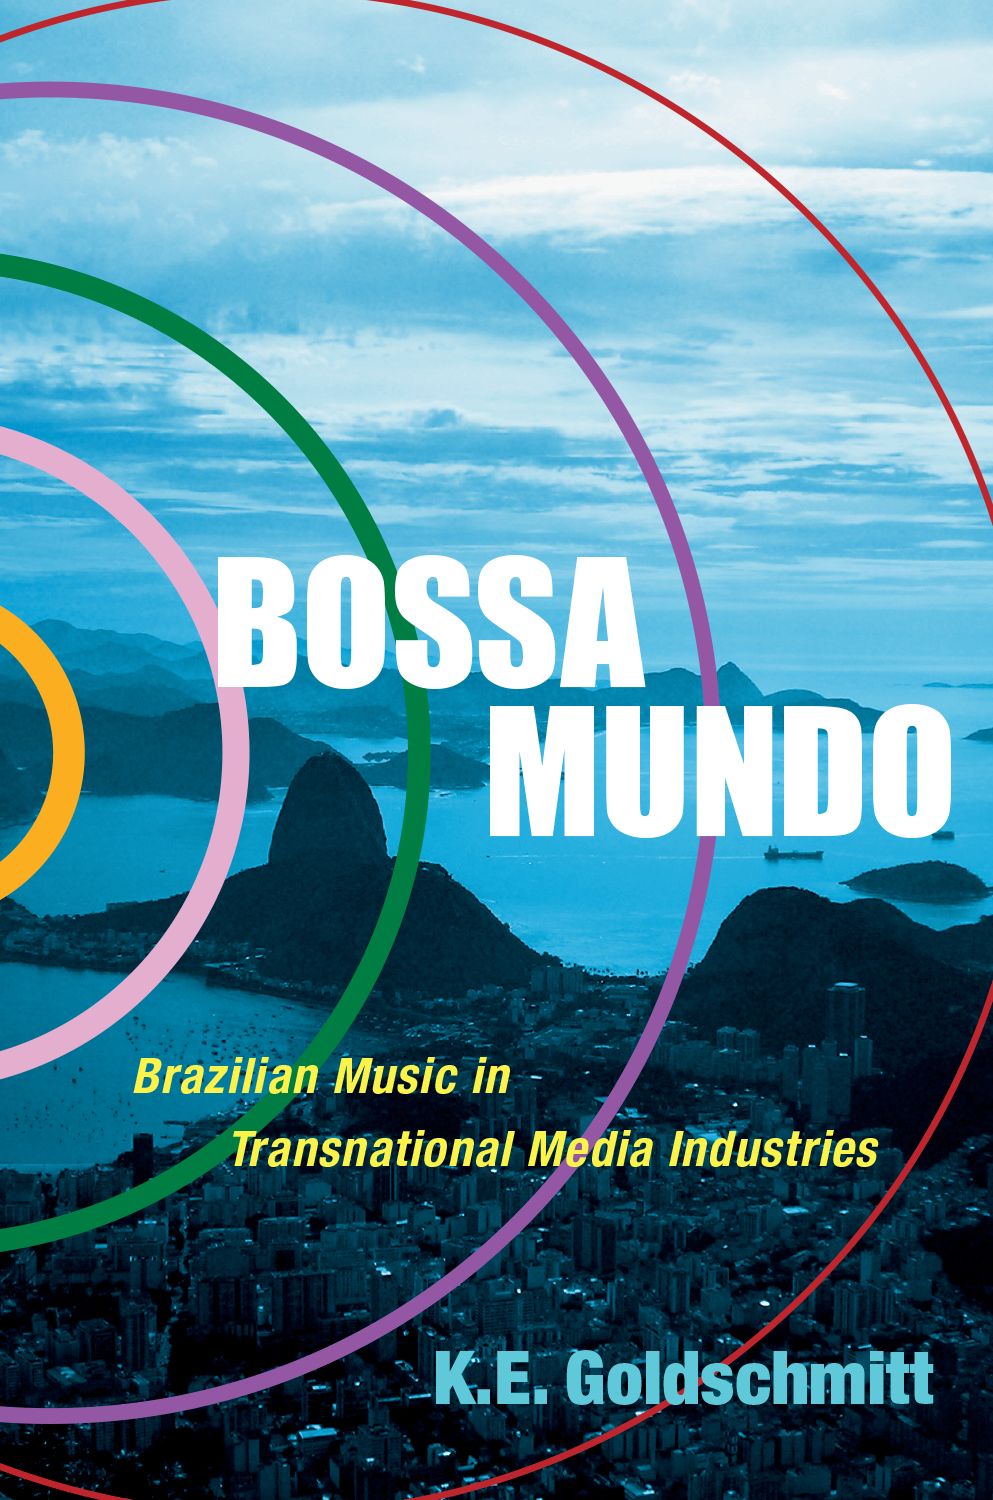 Bossa Mundo Brazilian Music: Reference